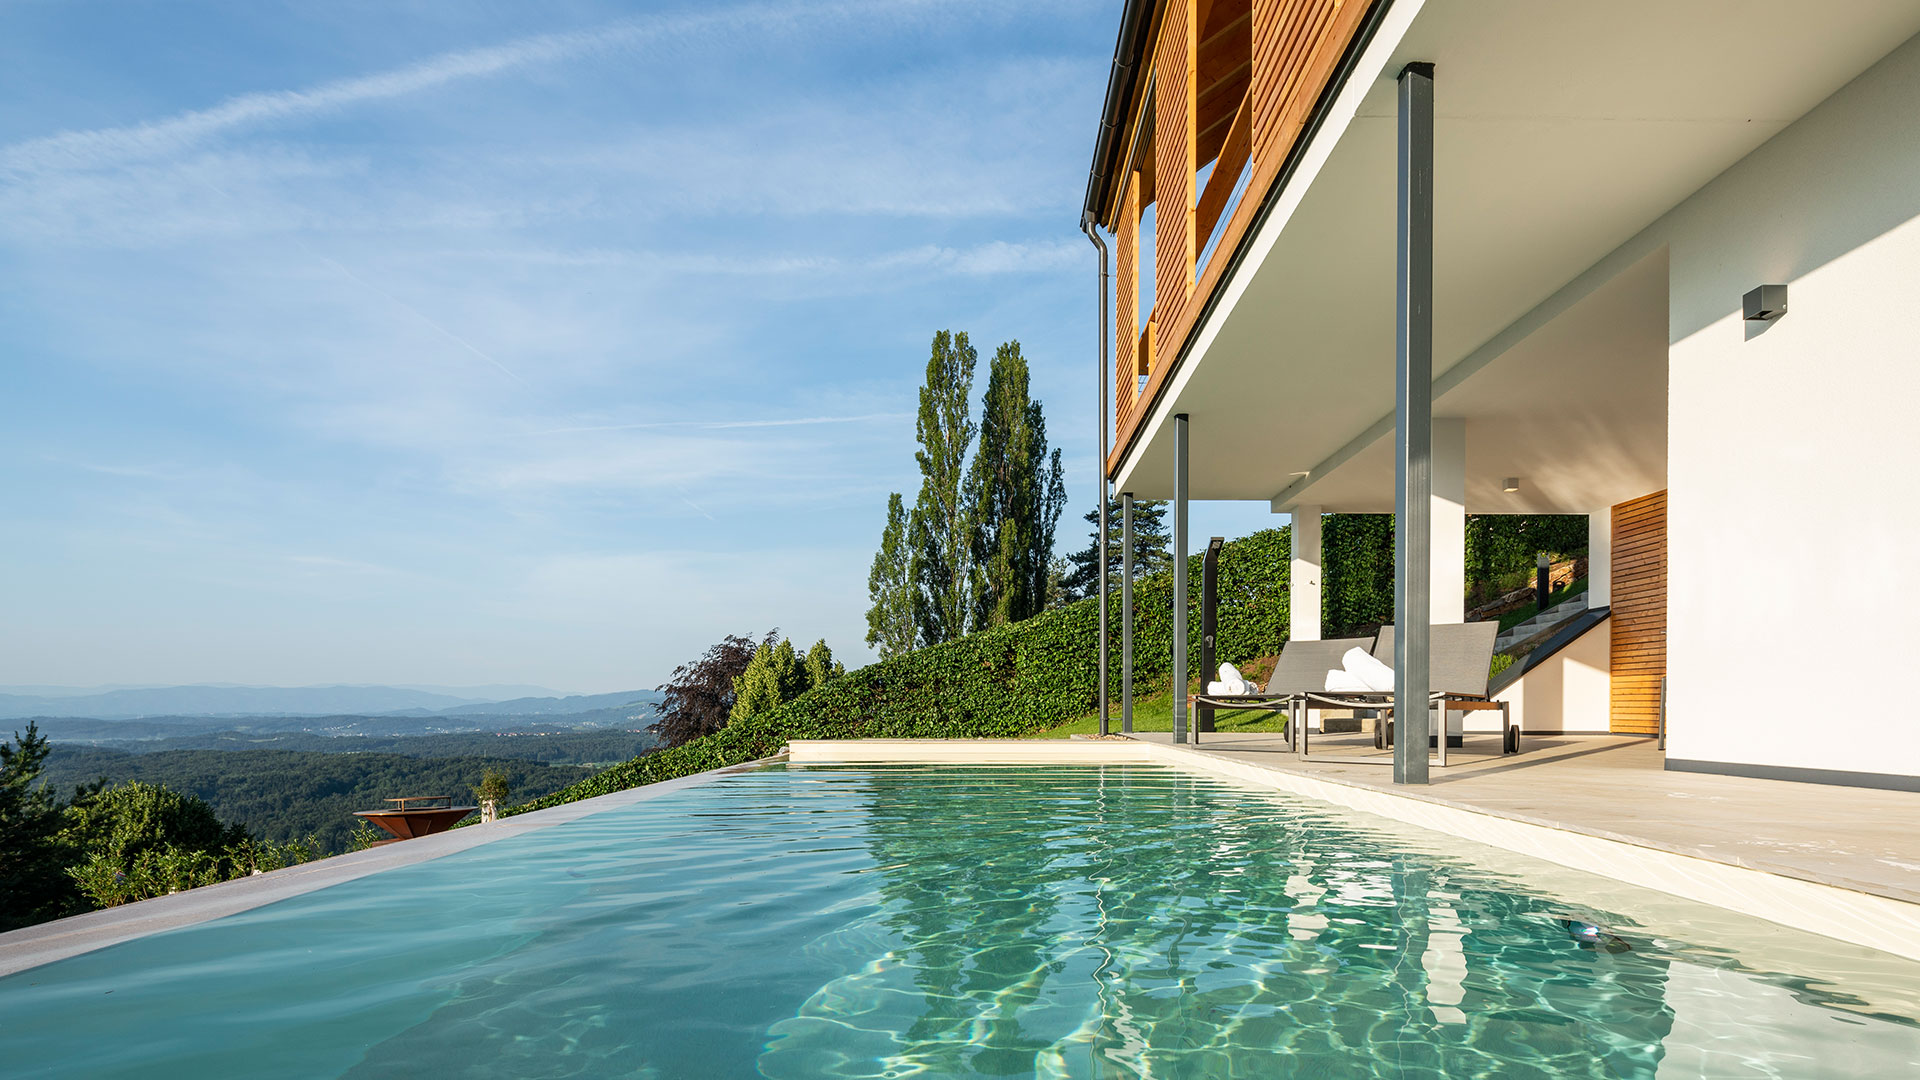 Domizil Vochera-Südsteiermark-Luxus-Ferienhaus-Pool-Terrasse-Garten